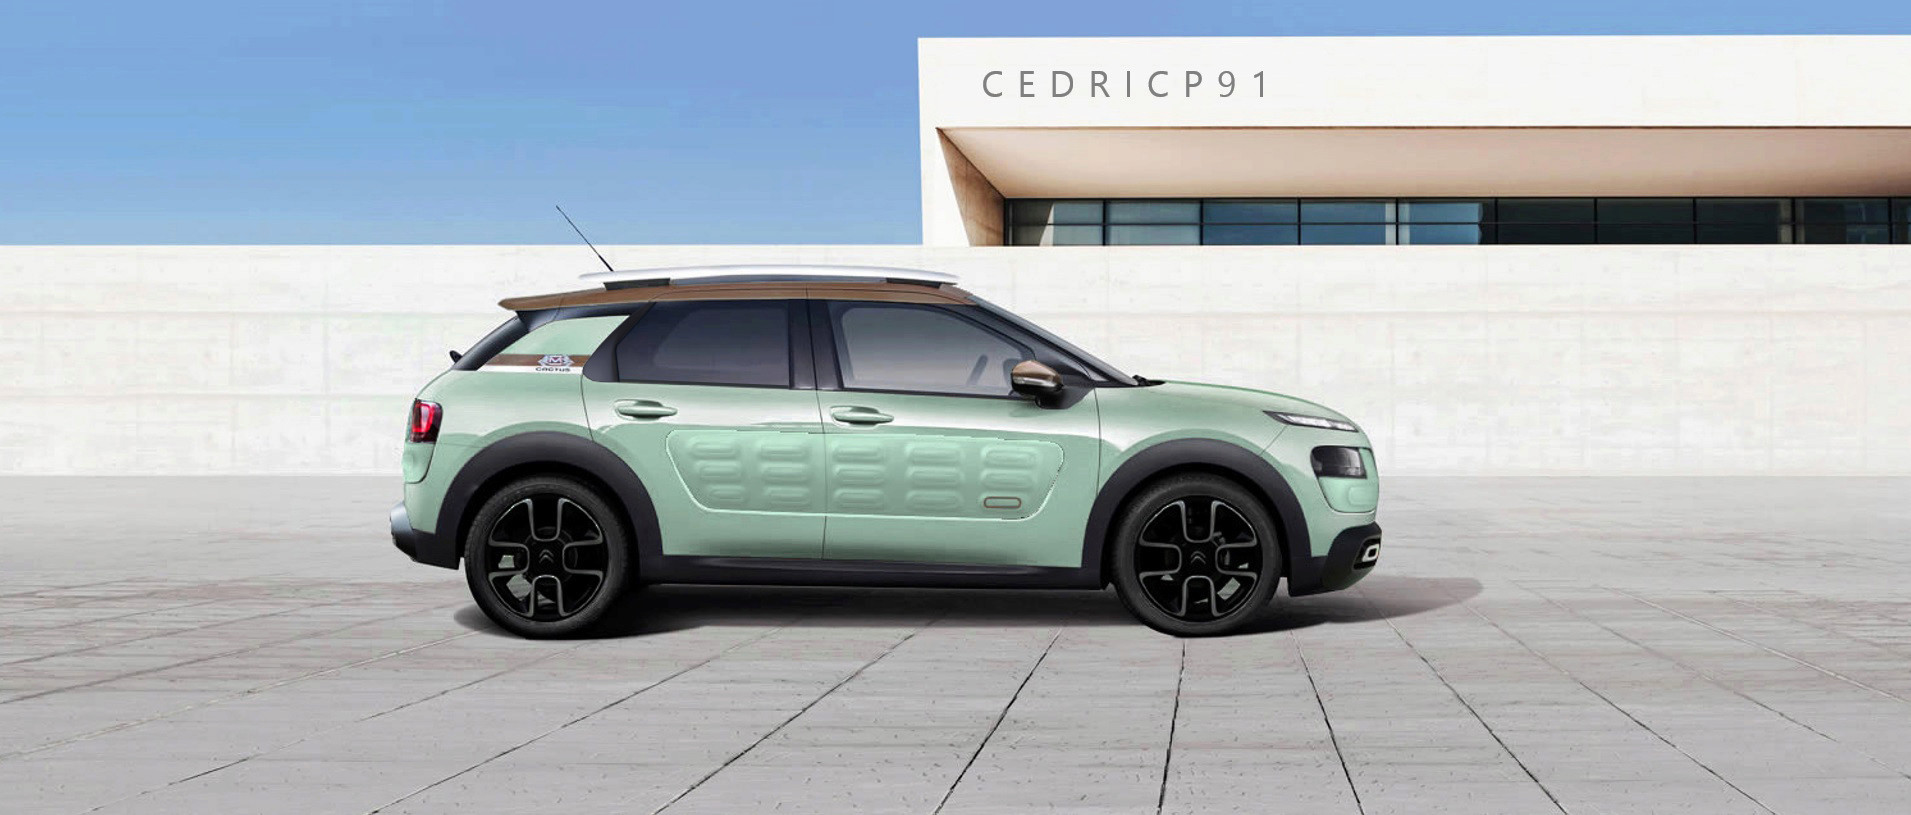 2018 - [Citroën] C4 Cactus restylé  - Page 5 Sans_t49